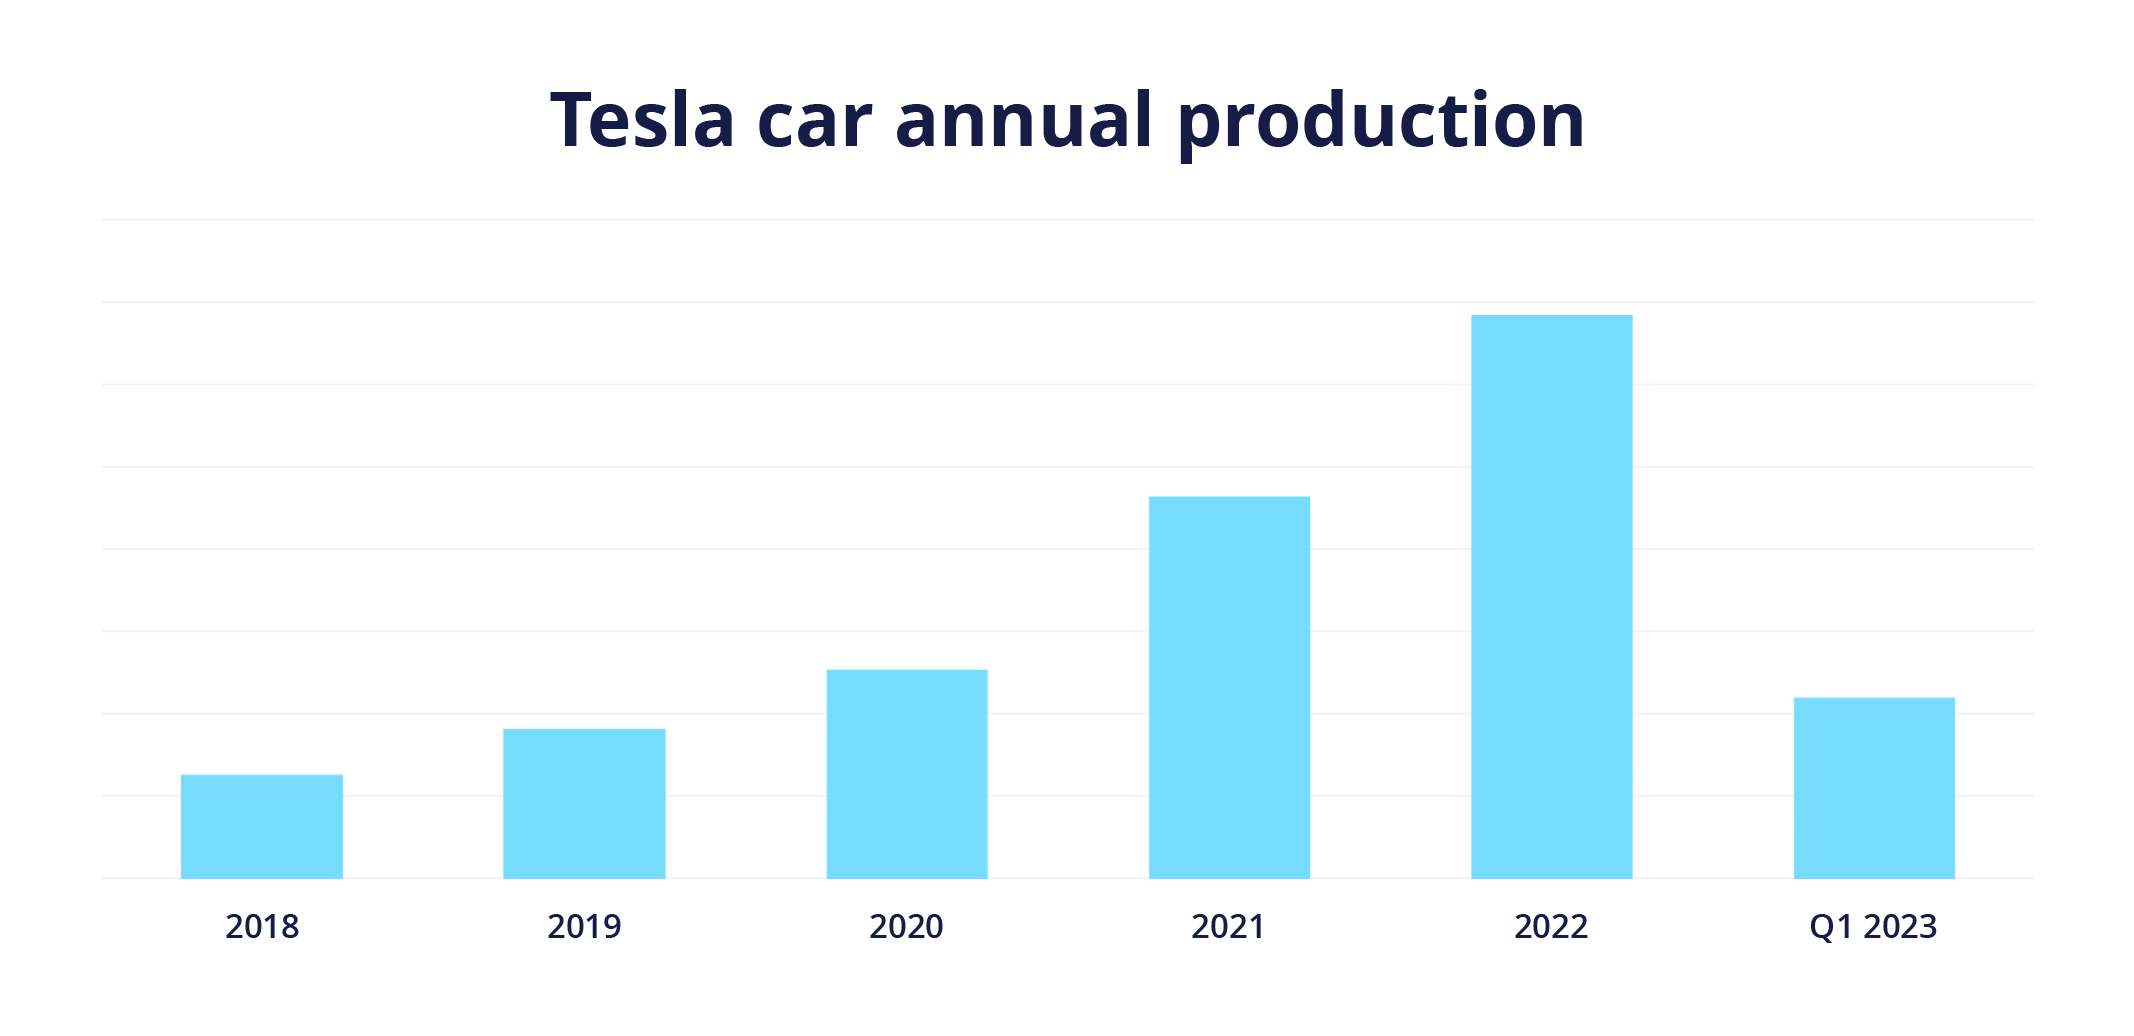 Production annuelle de voitures Tesla de 2018 à 2022